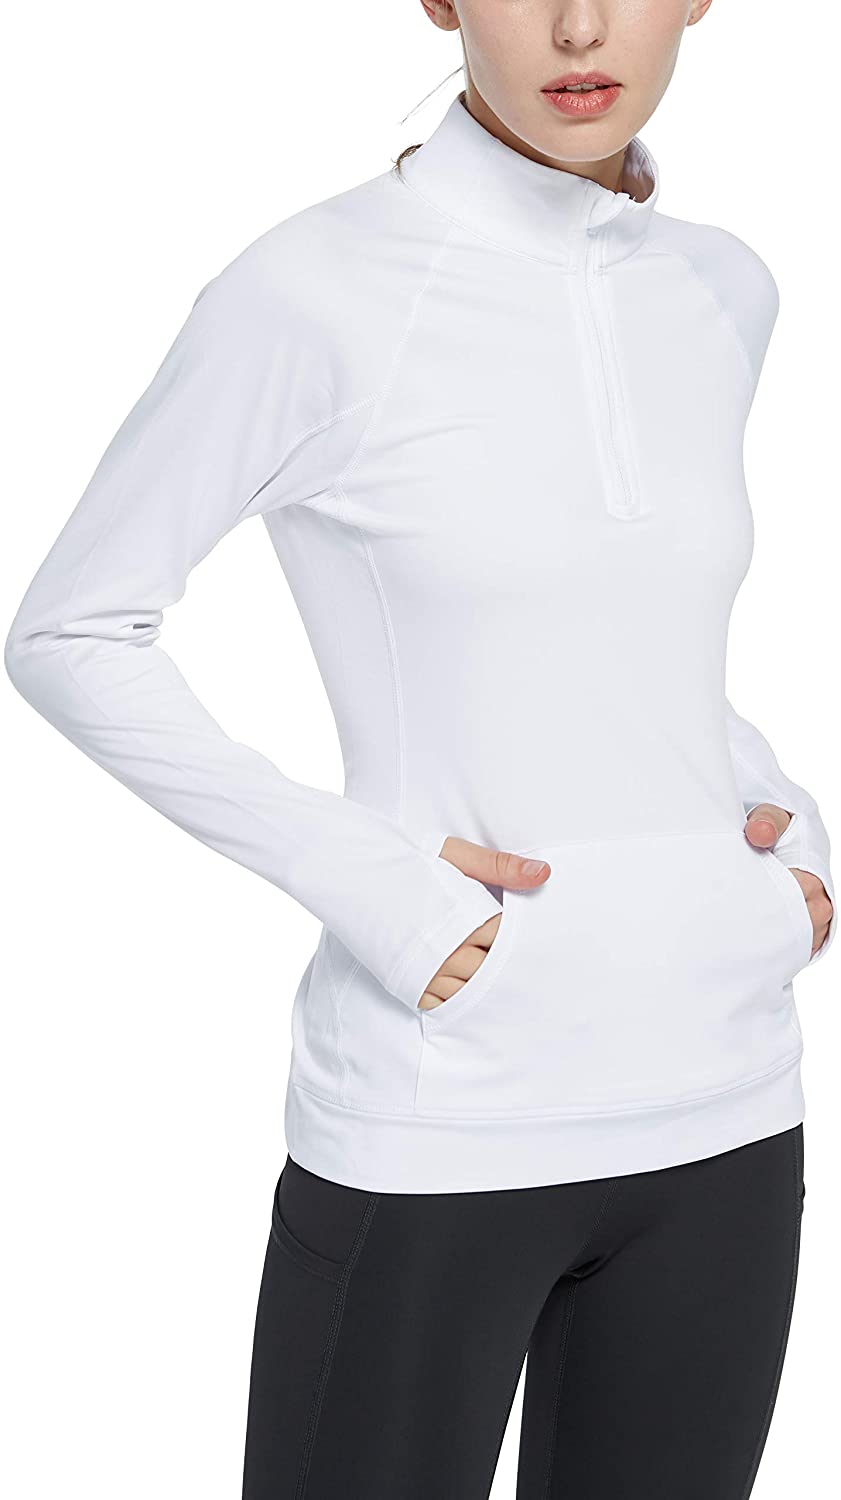 Cityoung Women's Yoga Long Sleeves Half Zip Sweatshirt Girl Athletic Workout Running Jacket 